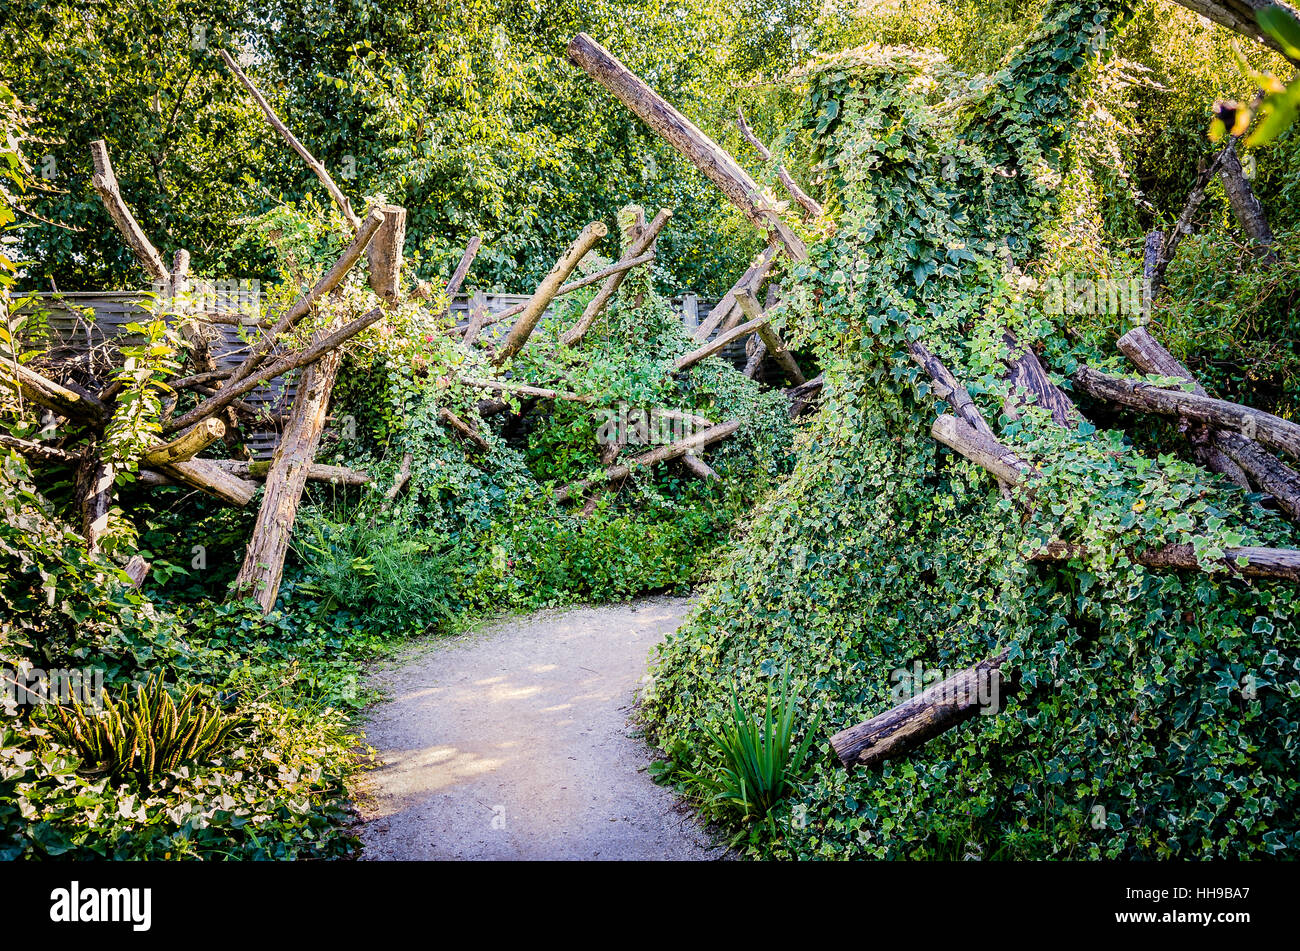 Un jardin d'une woody morceaux donne une air de mystère que le chemin mène hors de vue Banque D'Images